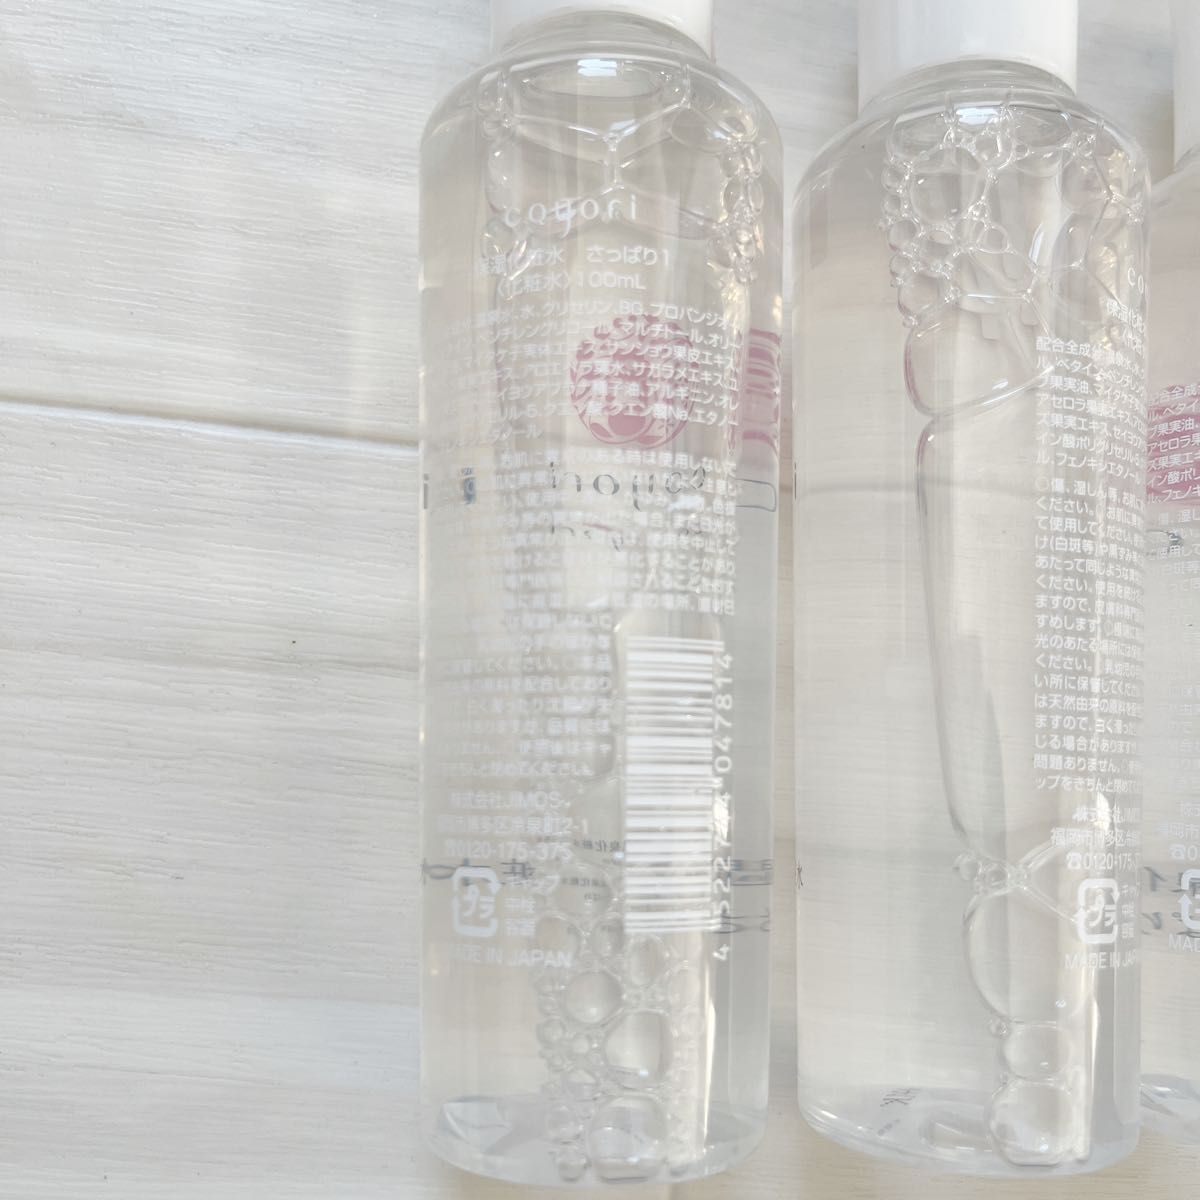 コヨリ coyori 高保湿温泉化粧水 さっぱり 100ml×5本 新品未開封